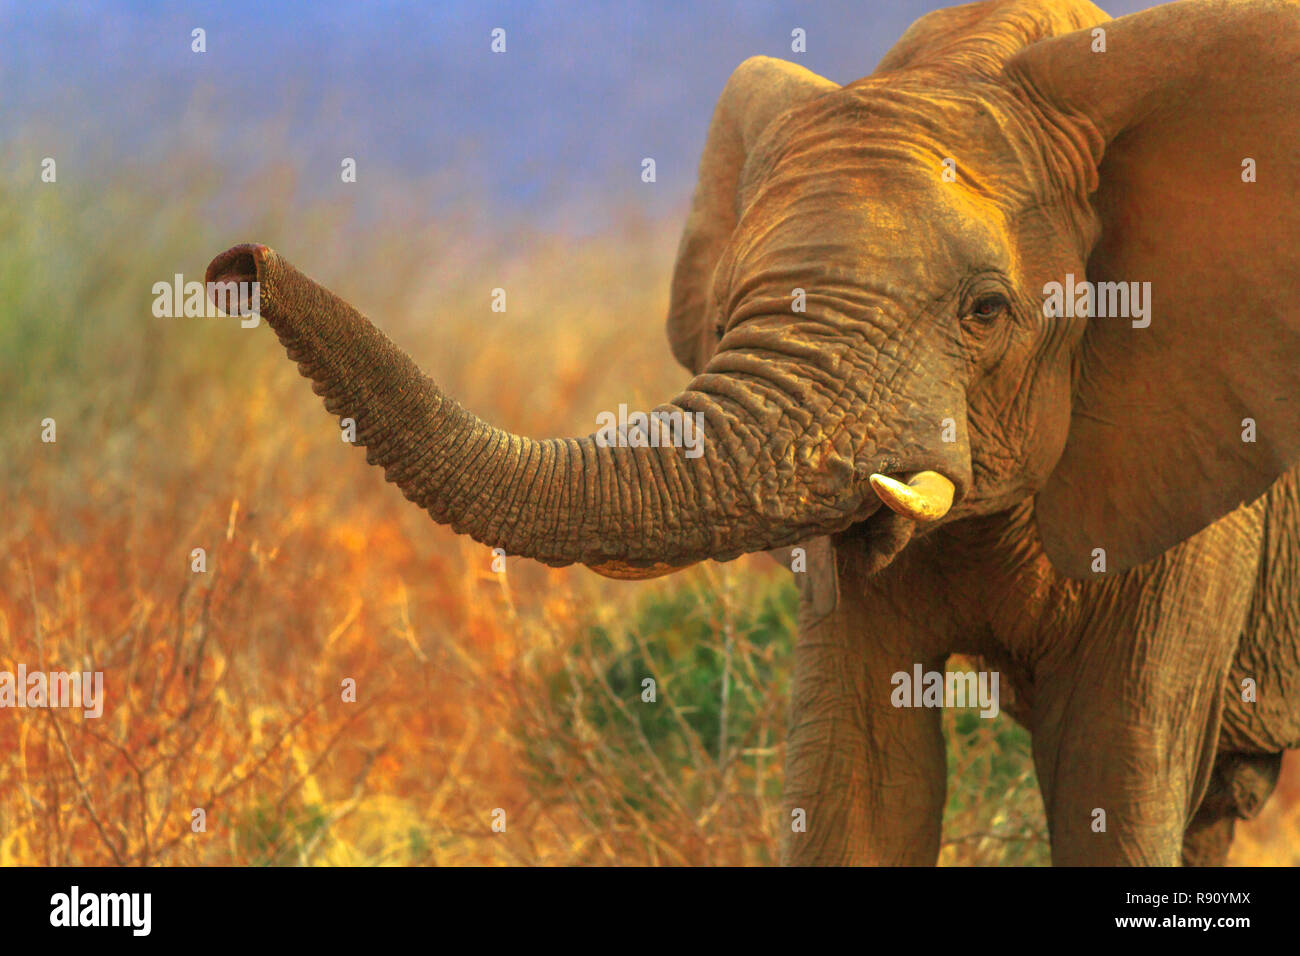 Portrait de l'éléphant africain, Loxodonta, dans la savane. Safari Safari à Madikwe Game Reserve, Afrique du Sud. Arrière-plan flou en saison sèche. L'éléphant africain fait partie des Big Five. Copier l'espace. Banque D'Images